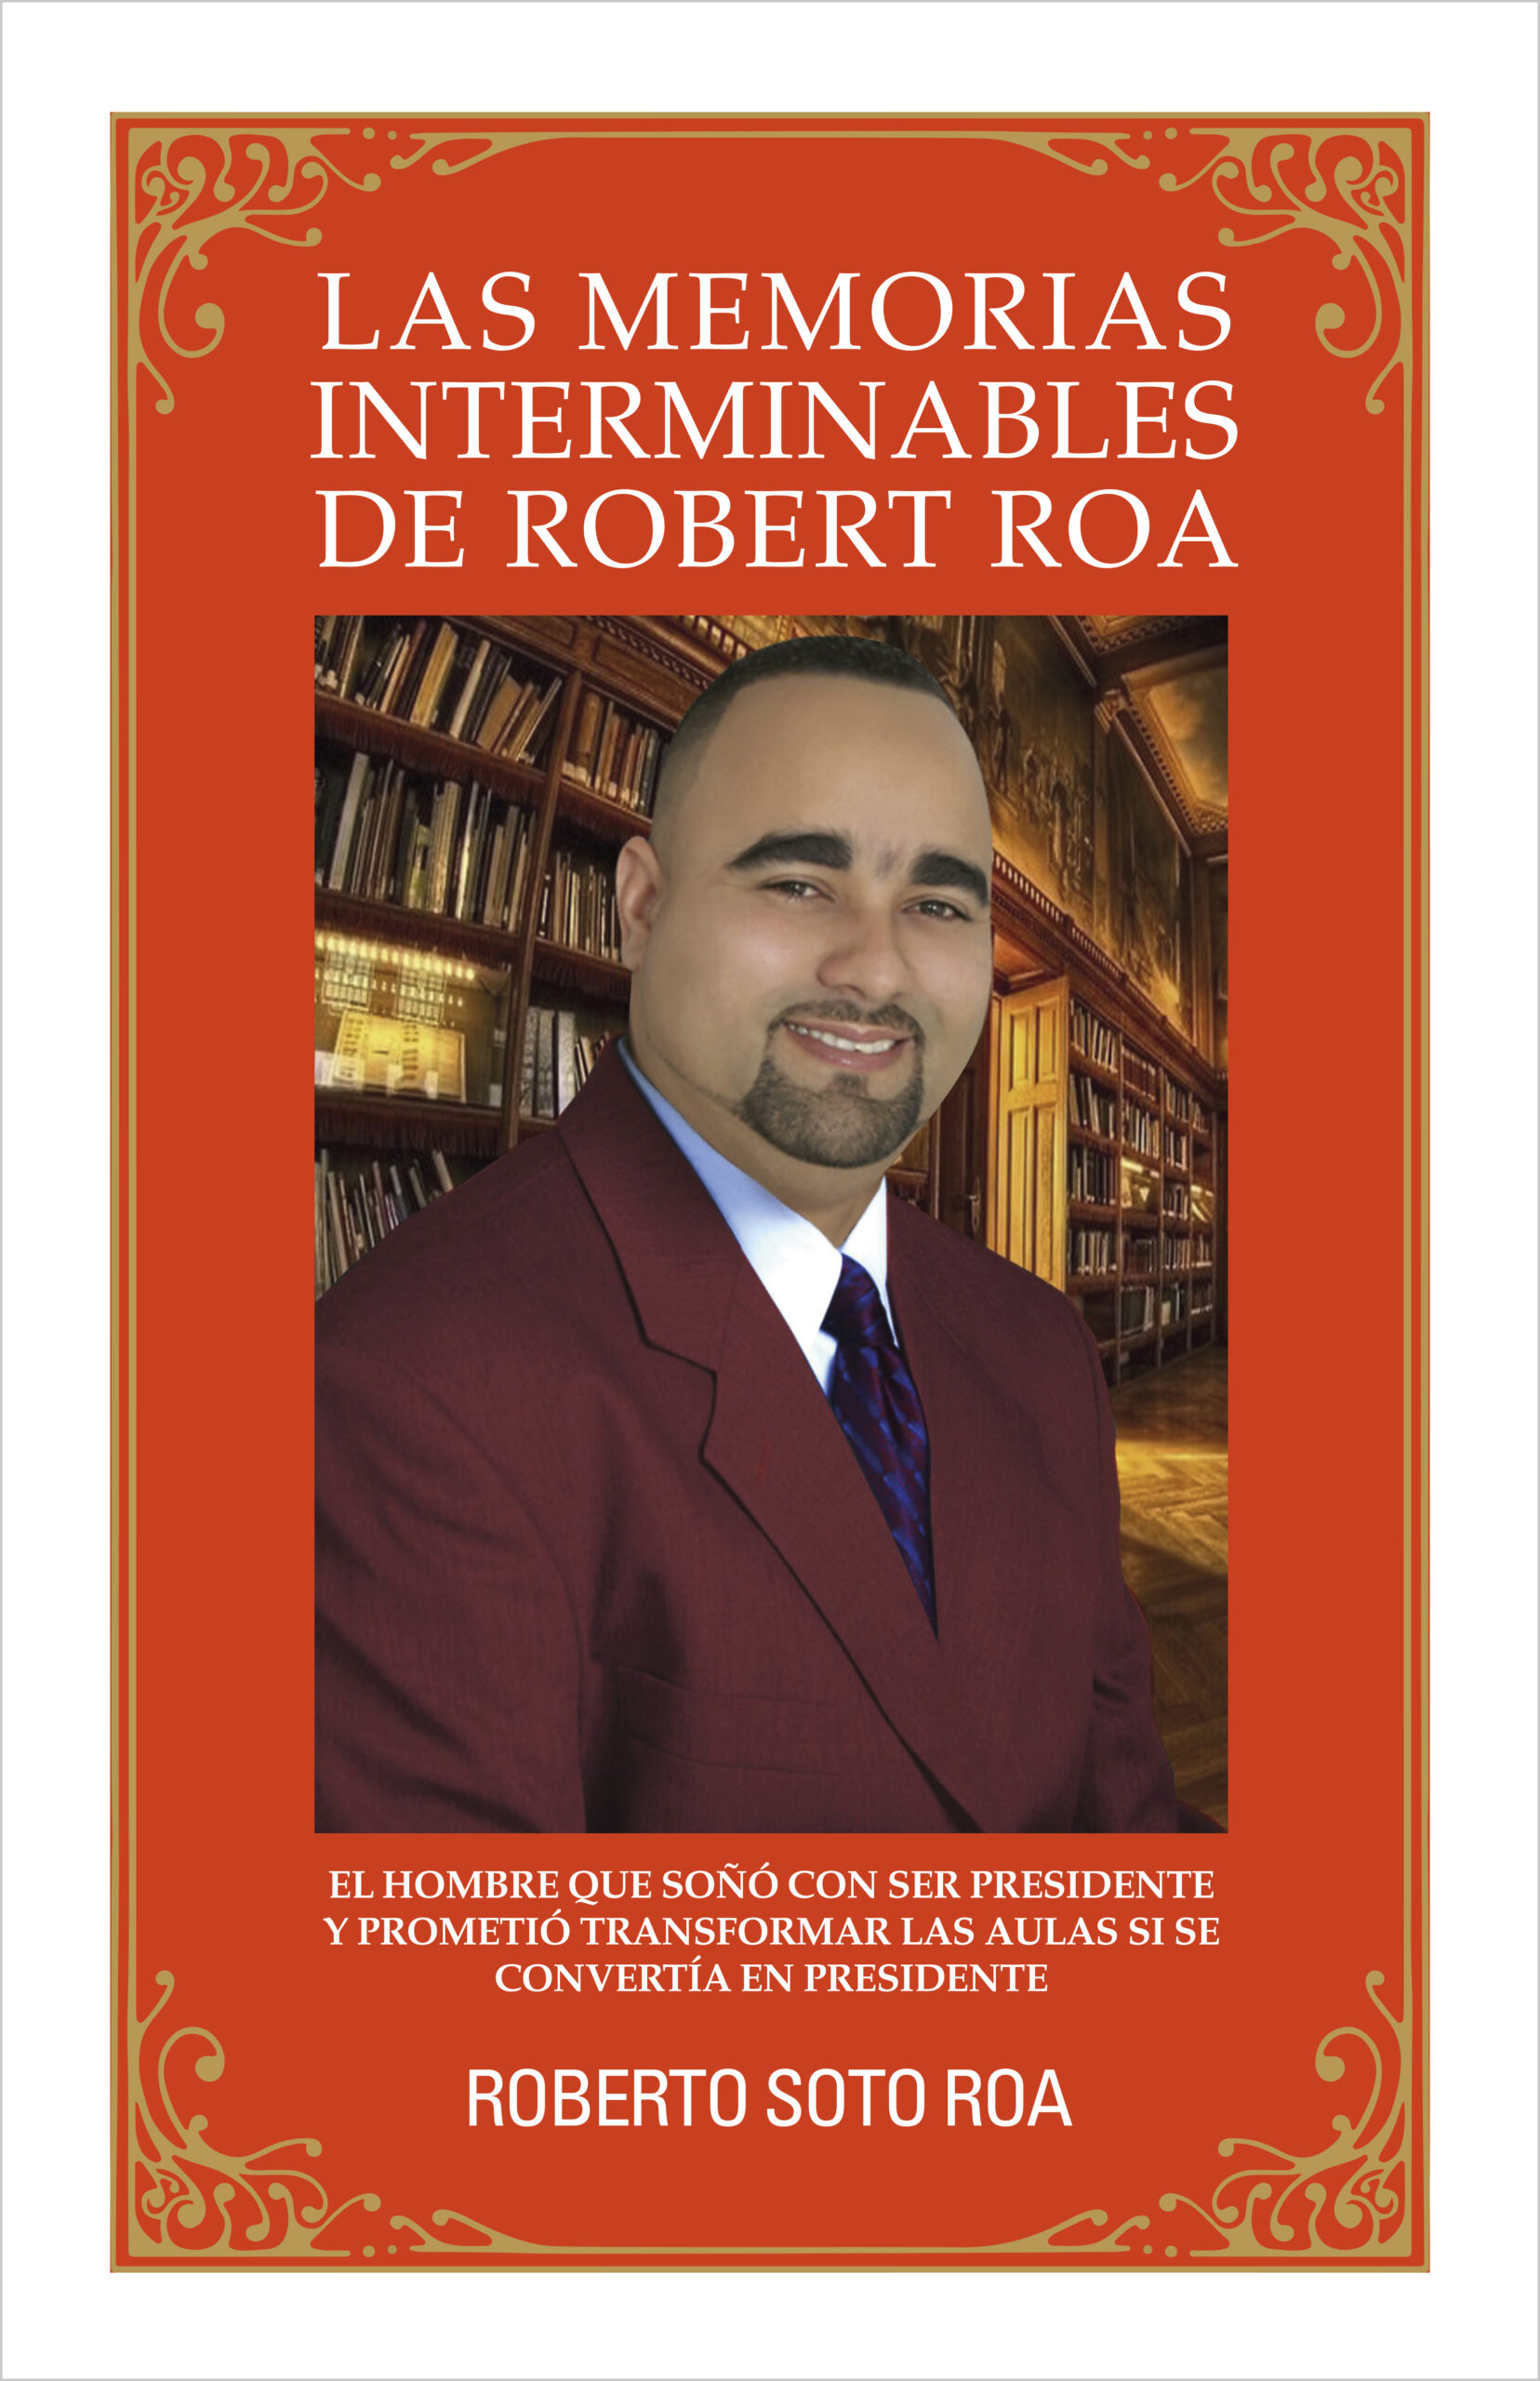 Las memorias interminables de Robert Roa, de Roberto Soto Roa